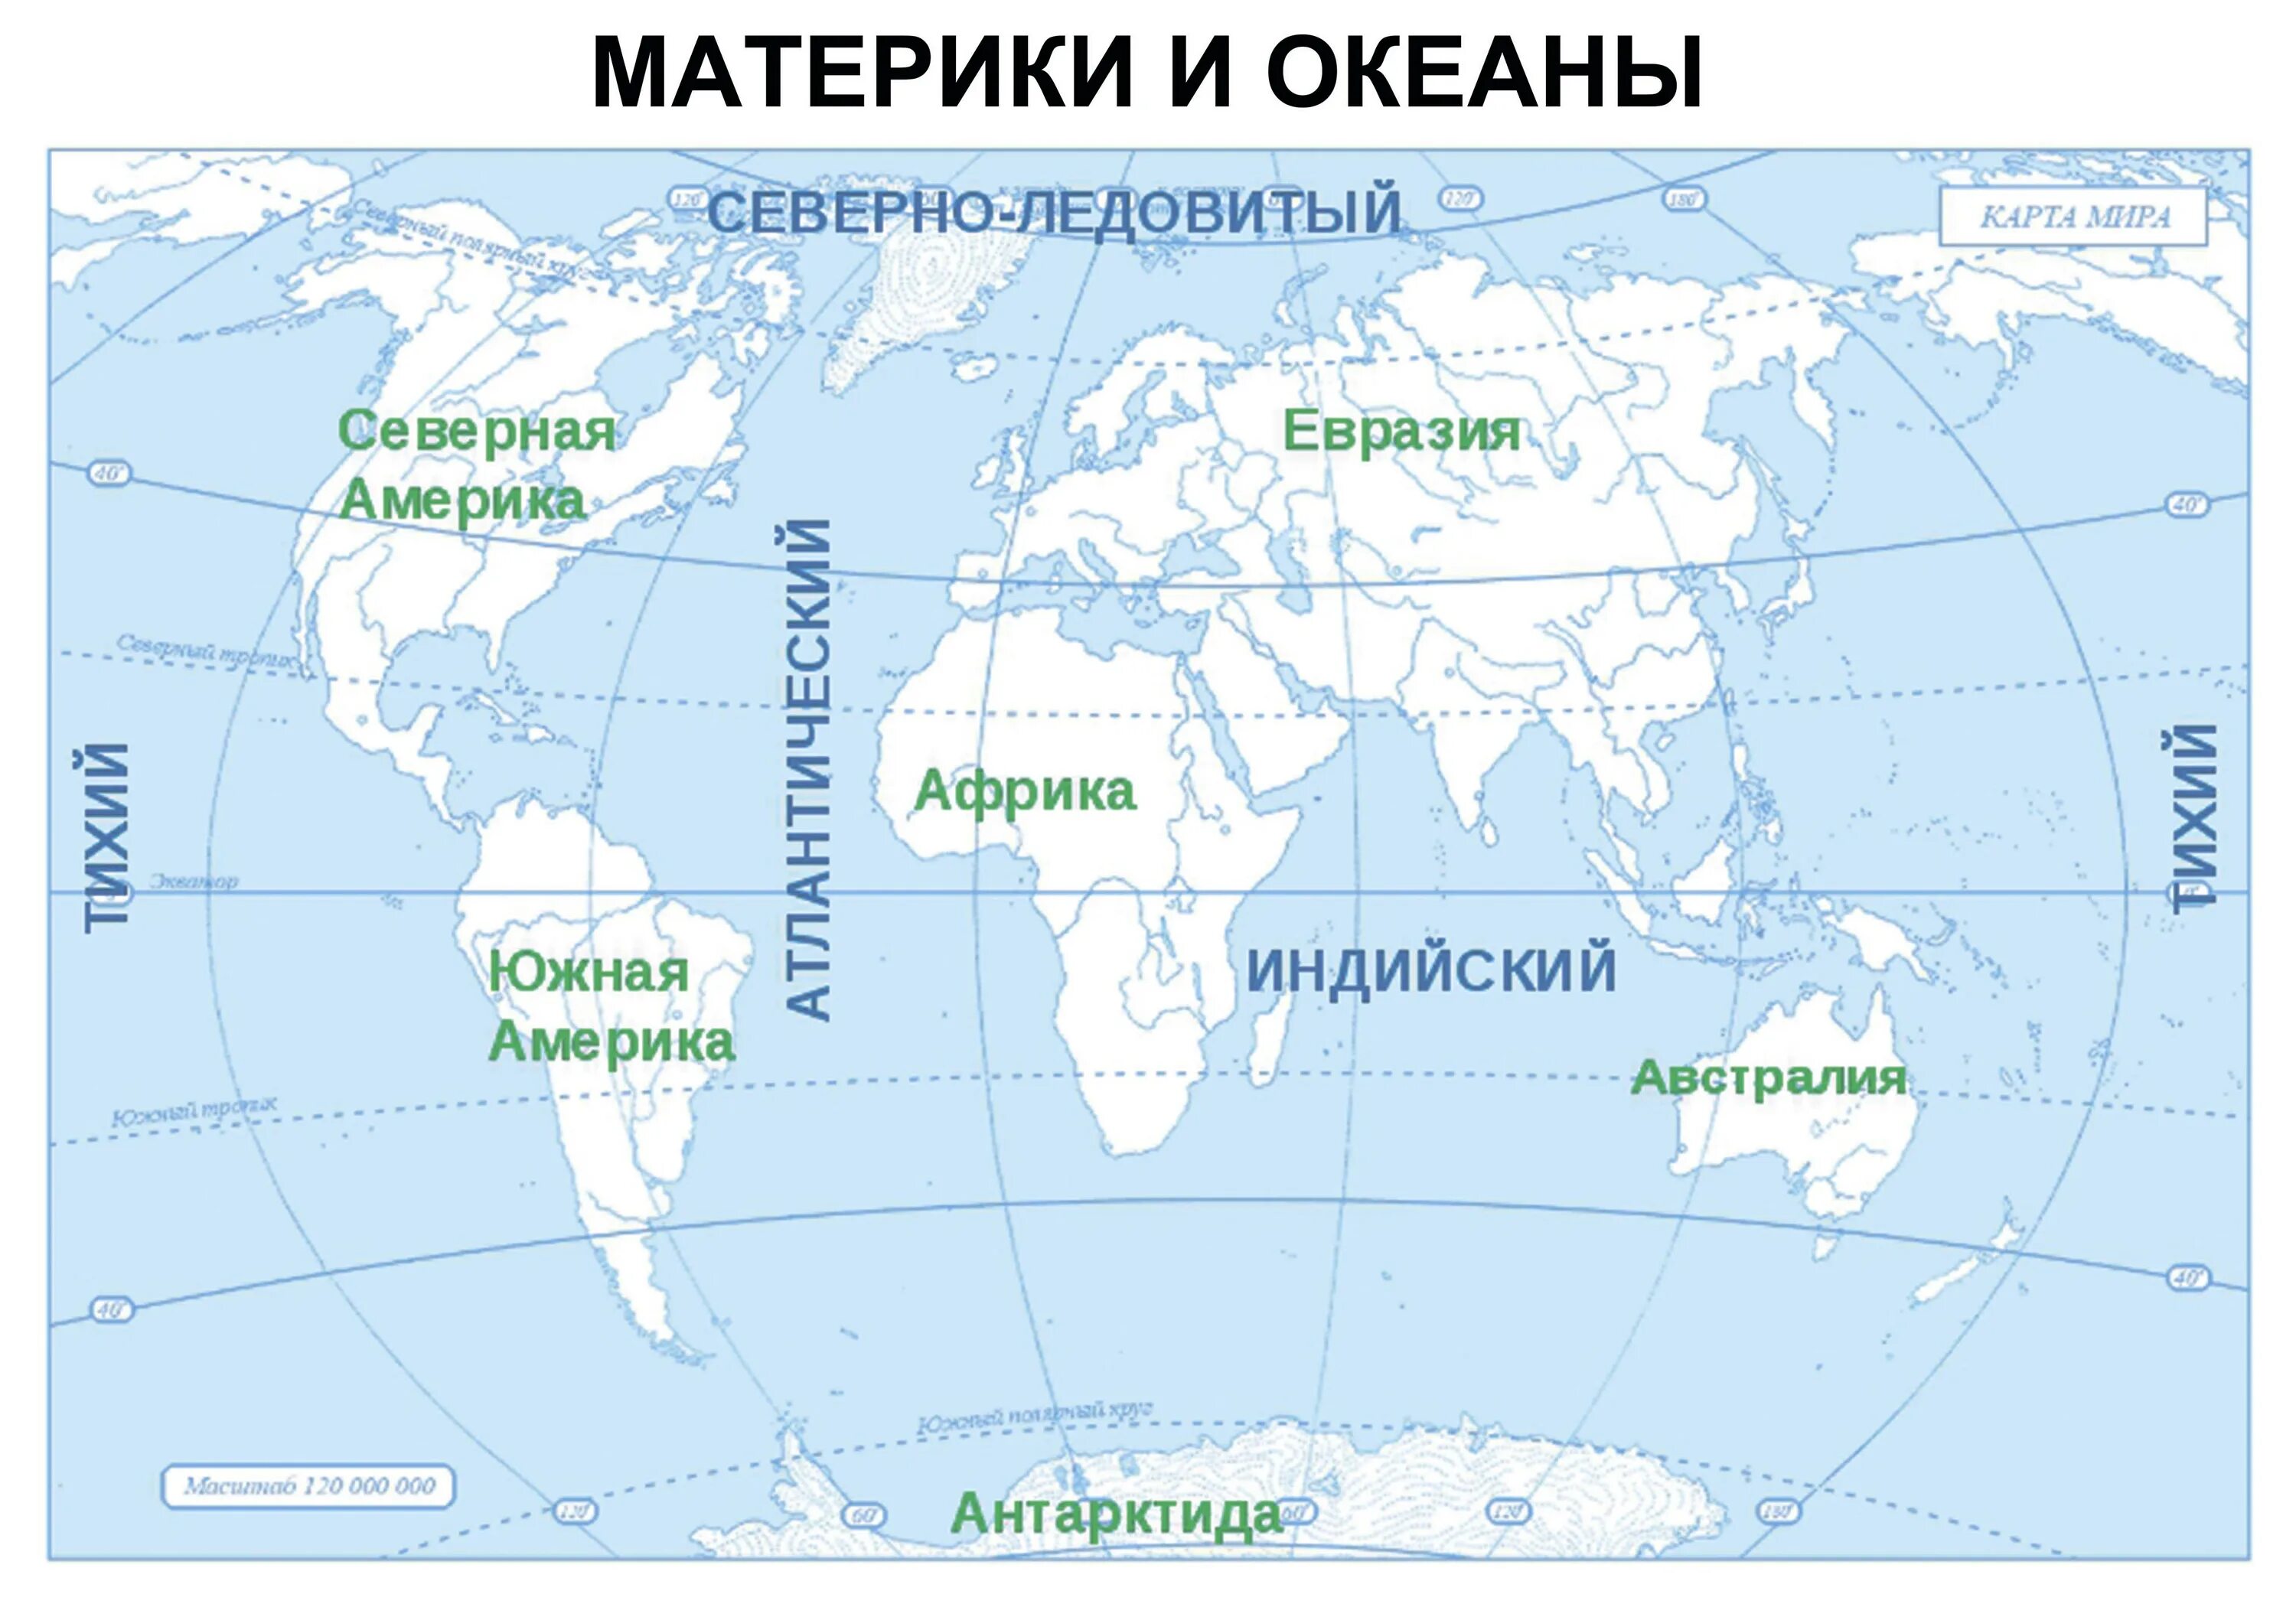 Какие океаны есть 4 океана. Карта где подписаны материки и океаны. Подписать материки и океаны на контурной карте. Подписать материки на контурной карте 6 класс география.